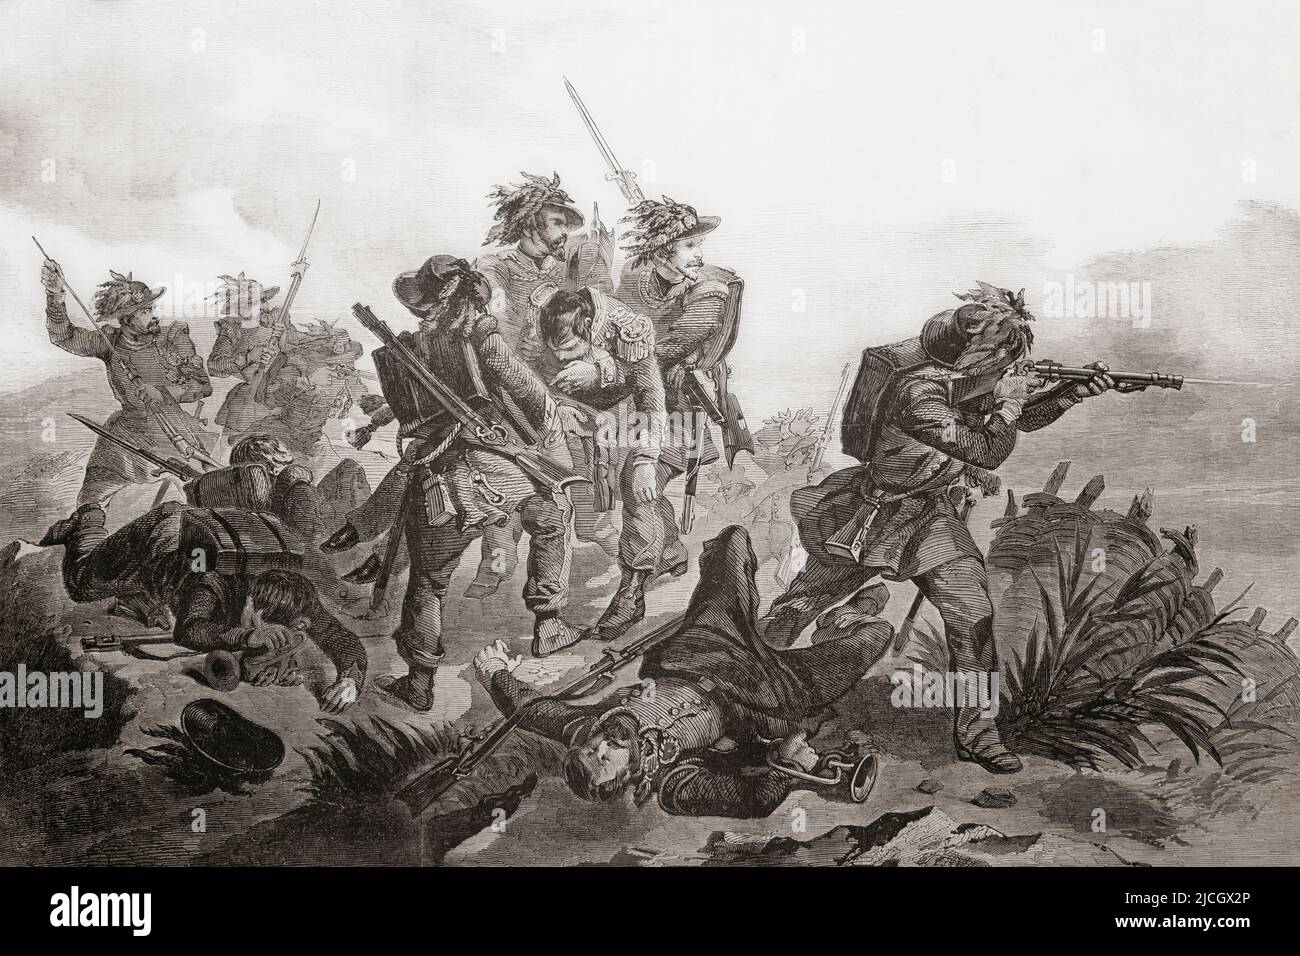 Soldaten des 8. Bersaglieri Regiments kämpfen in der Schlacht von Magenta, 4. Juni 1859 während des Zweiten Italienischen Unabhängigkeitskrieges. Aus L'Univers Illustre, Paris, 1859 Stockfoto